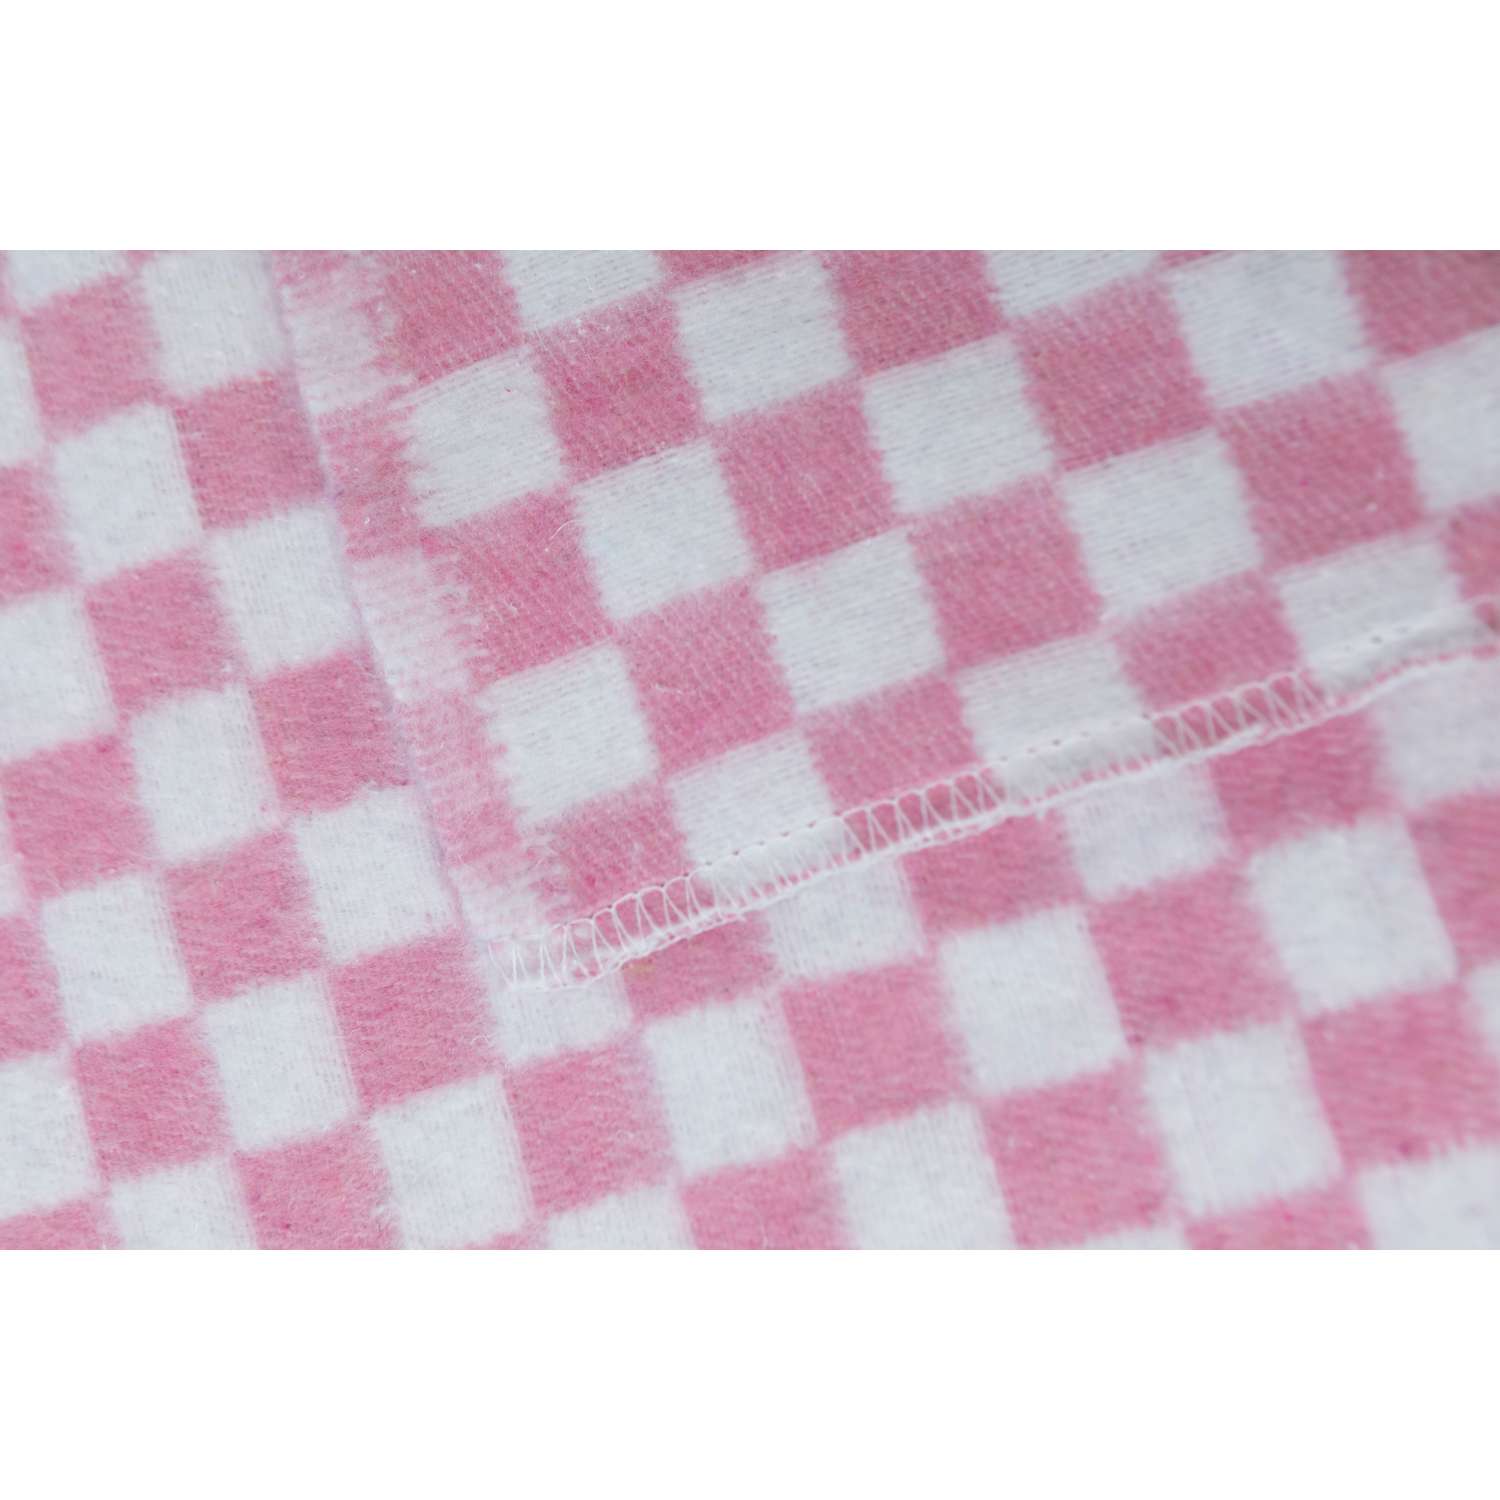 Одеяло байковое Суконная фабрика г. Шуя 140х205 рисунок клетка розовый - фото 2